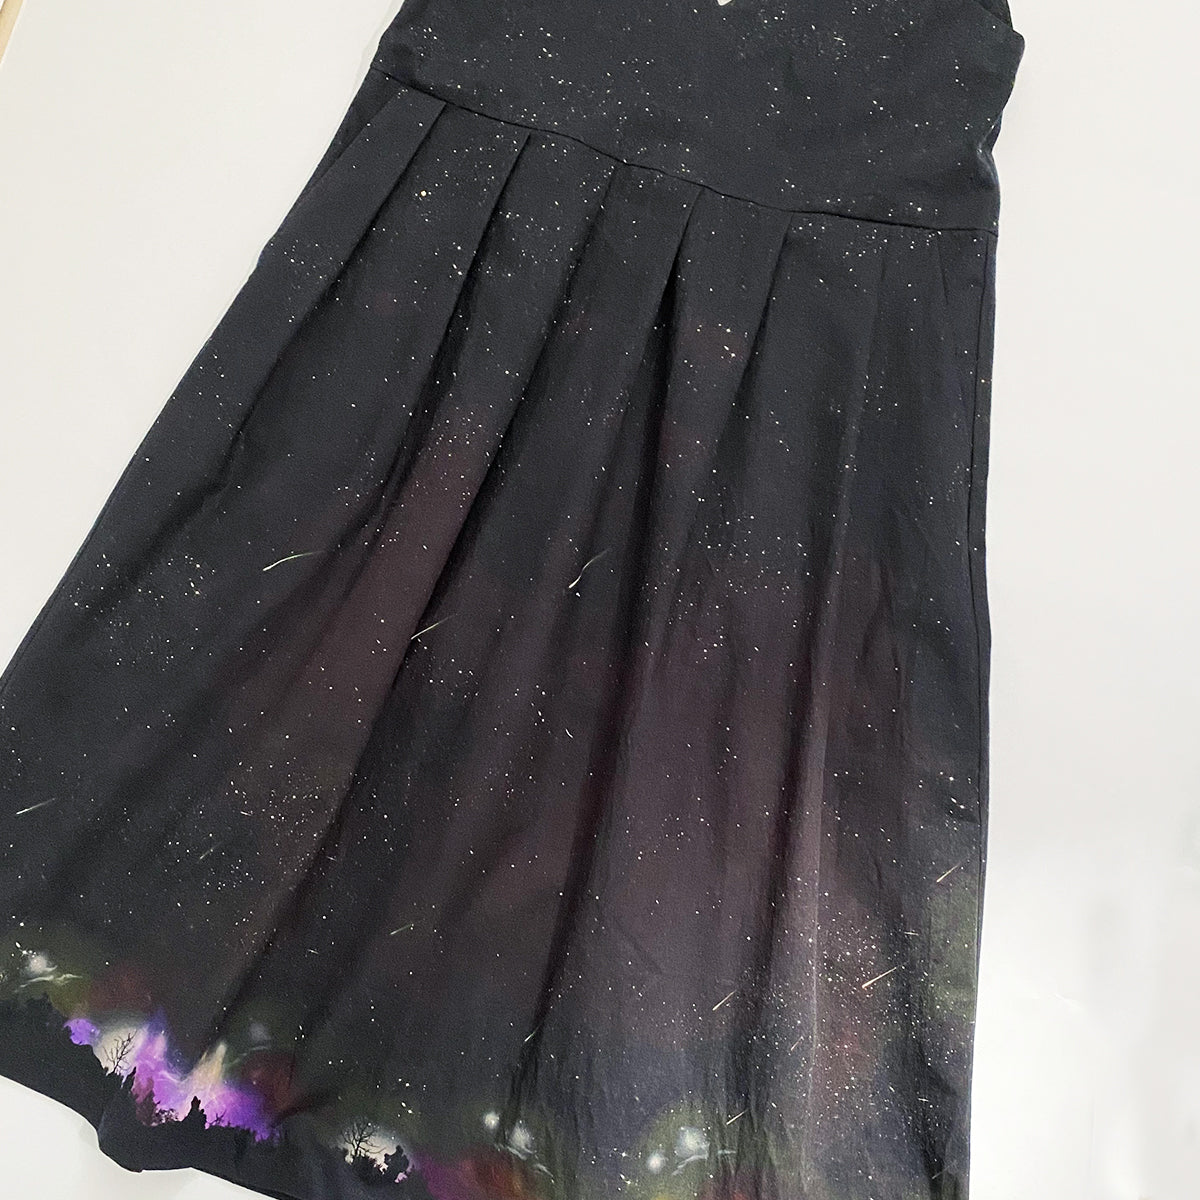 夜空を着飾る 流星BLACK柄/Vネックジャンパースカート ワンピース